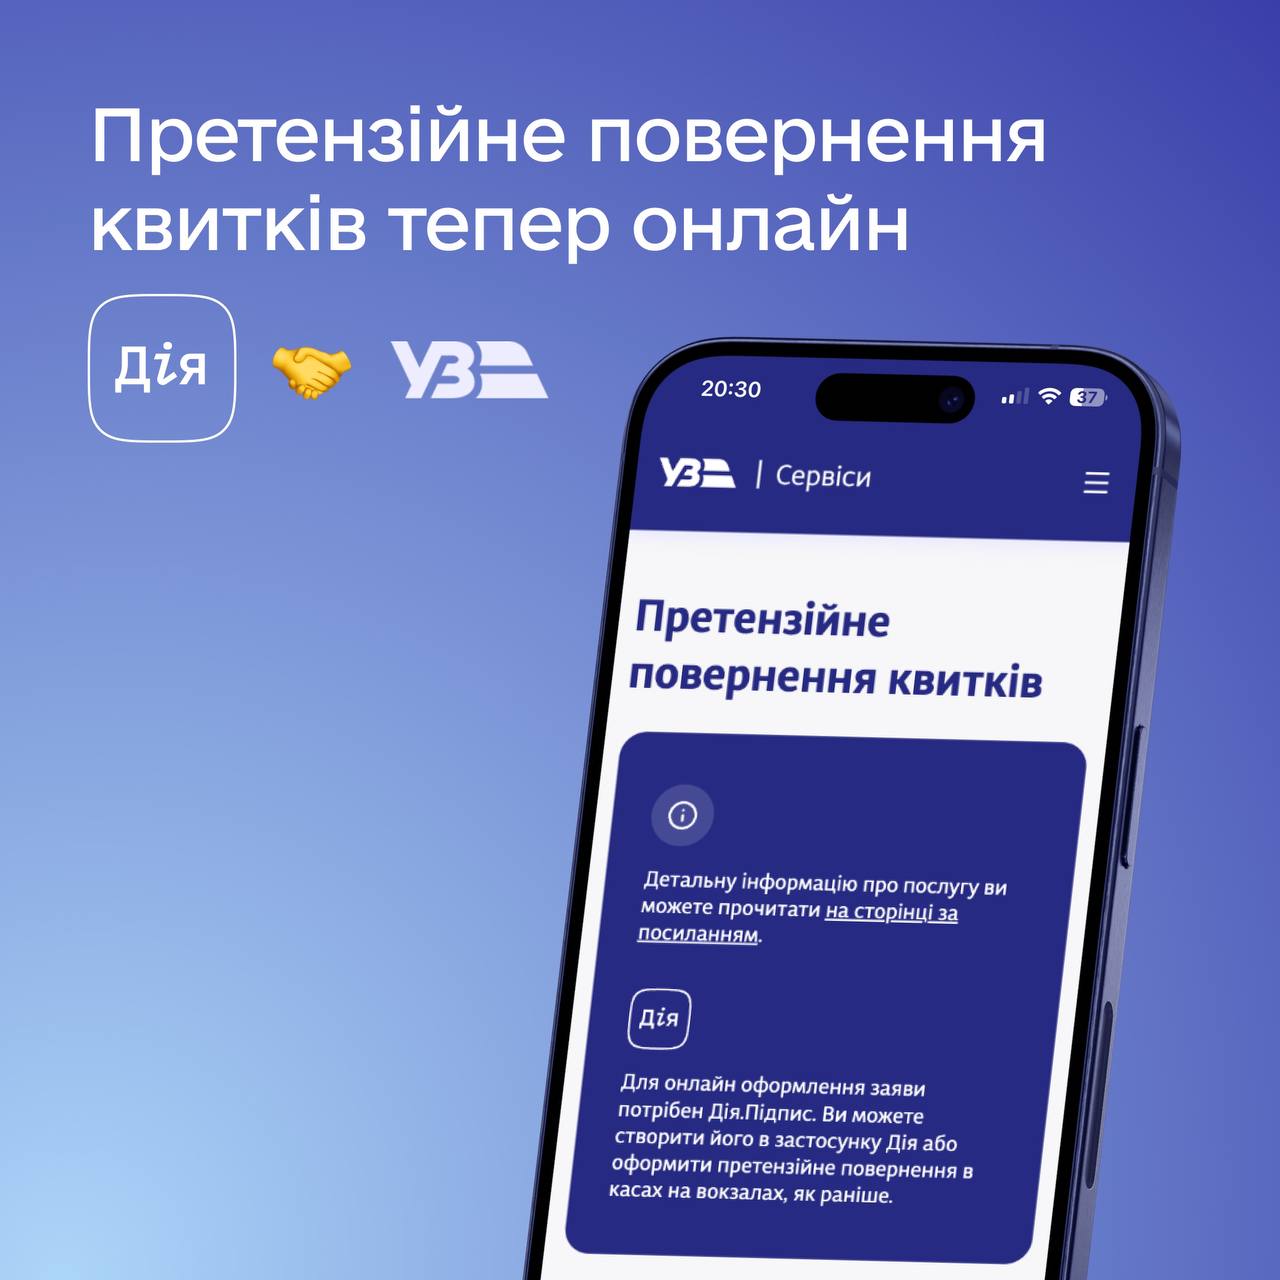 зображення смартфона на синьому тлі з логотипами Дії, Укрзалізниці та написом "Претензійне повернення квитків тепер онлайн"